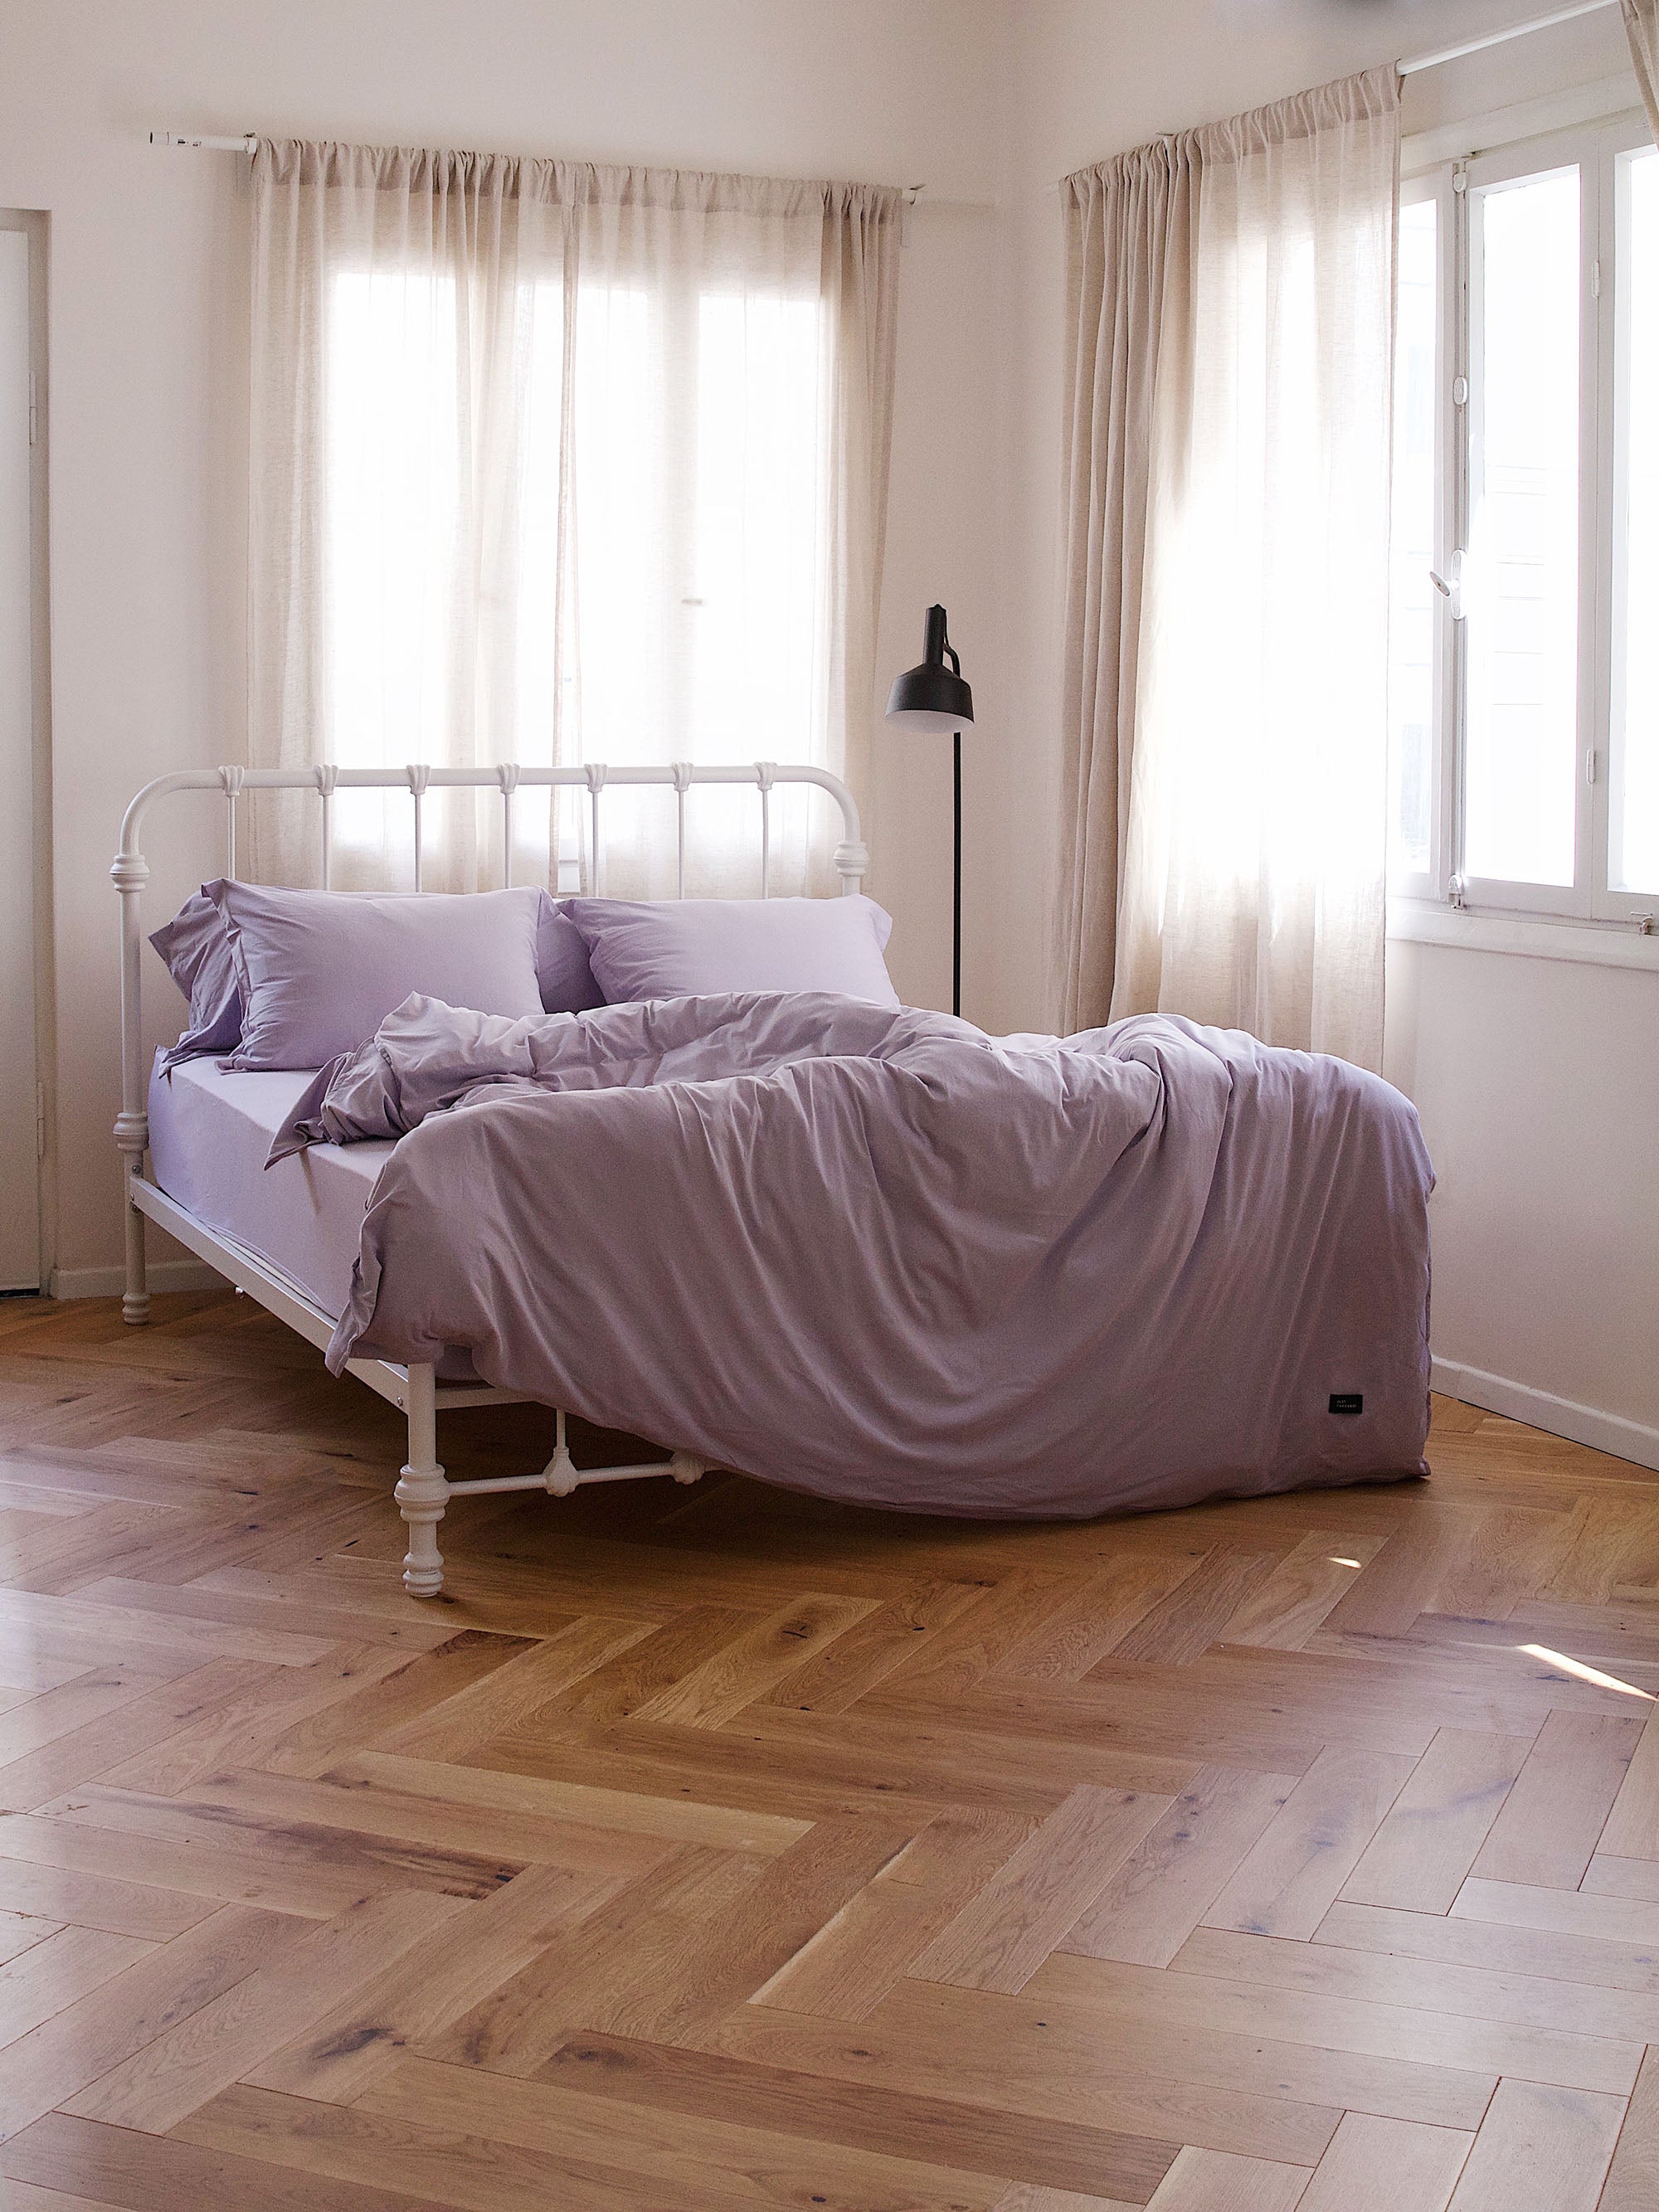 מיטת ברזל לבנה עם מצעים איכותיים בחדר עם פרקט חלונות לבנים והרבה שמש